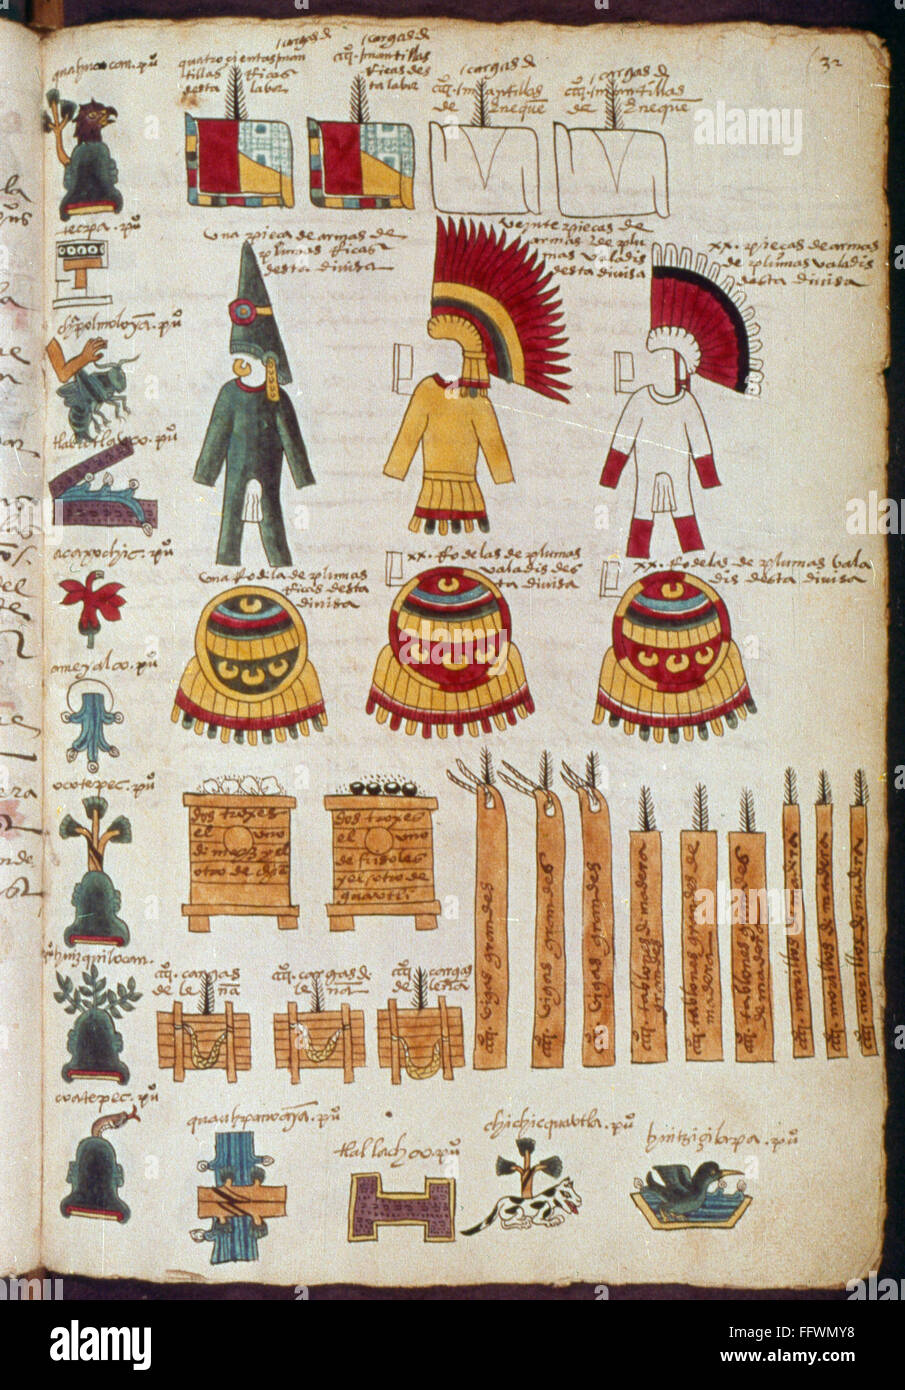 MEXIKO: AZTEKEN ILLUSTRATIONEN. /nAztec Kleidung und andere Artefakte, die  wahrscheinlich in religiösen Zeremonien verwendet. Buchmalerei  wahrscheinlich aus dem Codex Magliabechiana, Mitte des 16. Jahrhunderts  Stockfotografie - Alamy